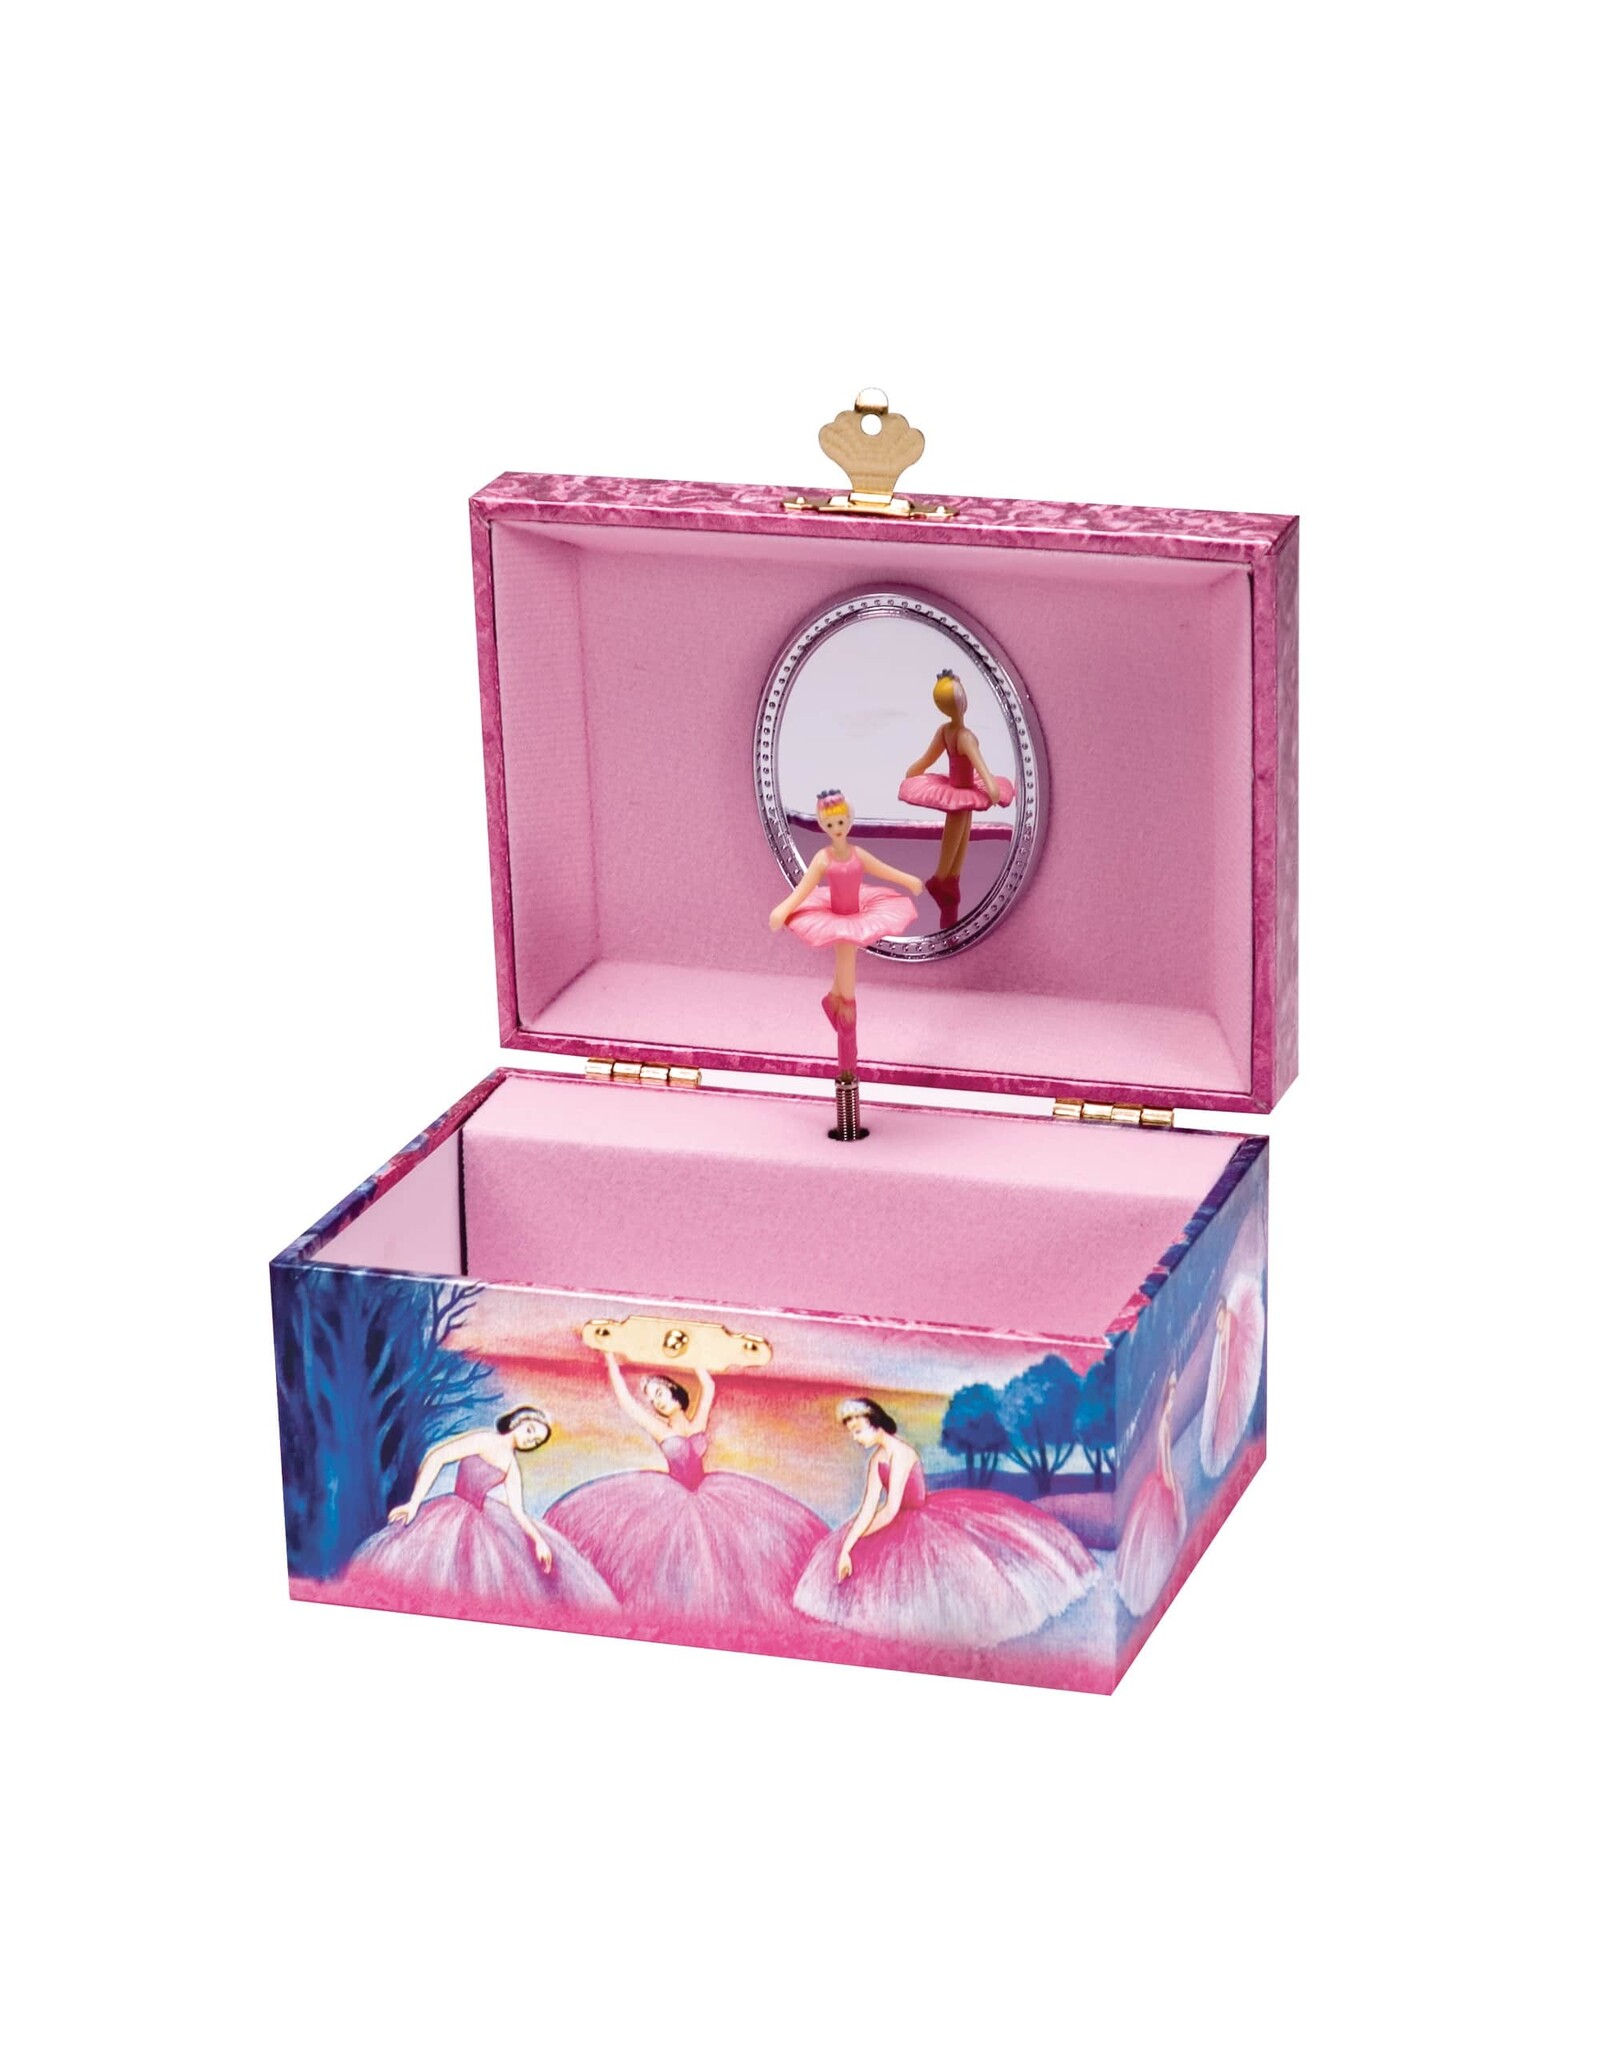 https://cdn.shoplightspeed.com/shops/635116/files/55357149/1600x2048x2/schylling-iridescent-ballerina-jewelry-box.jpg